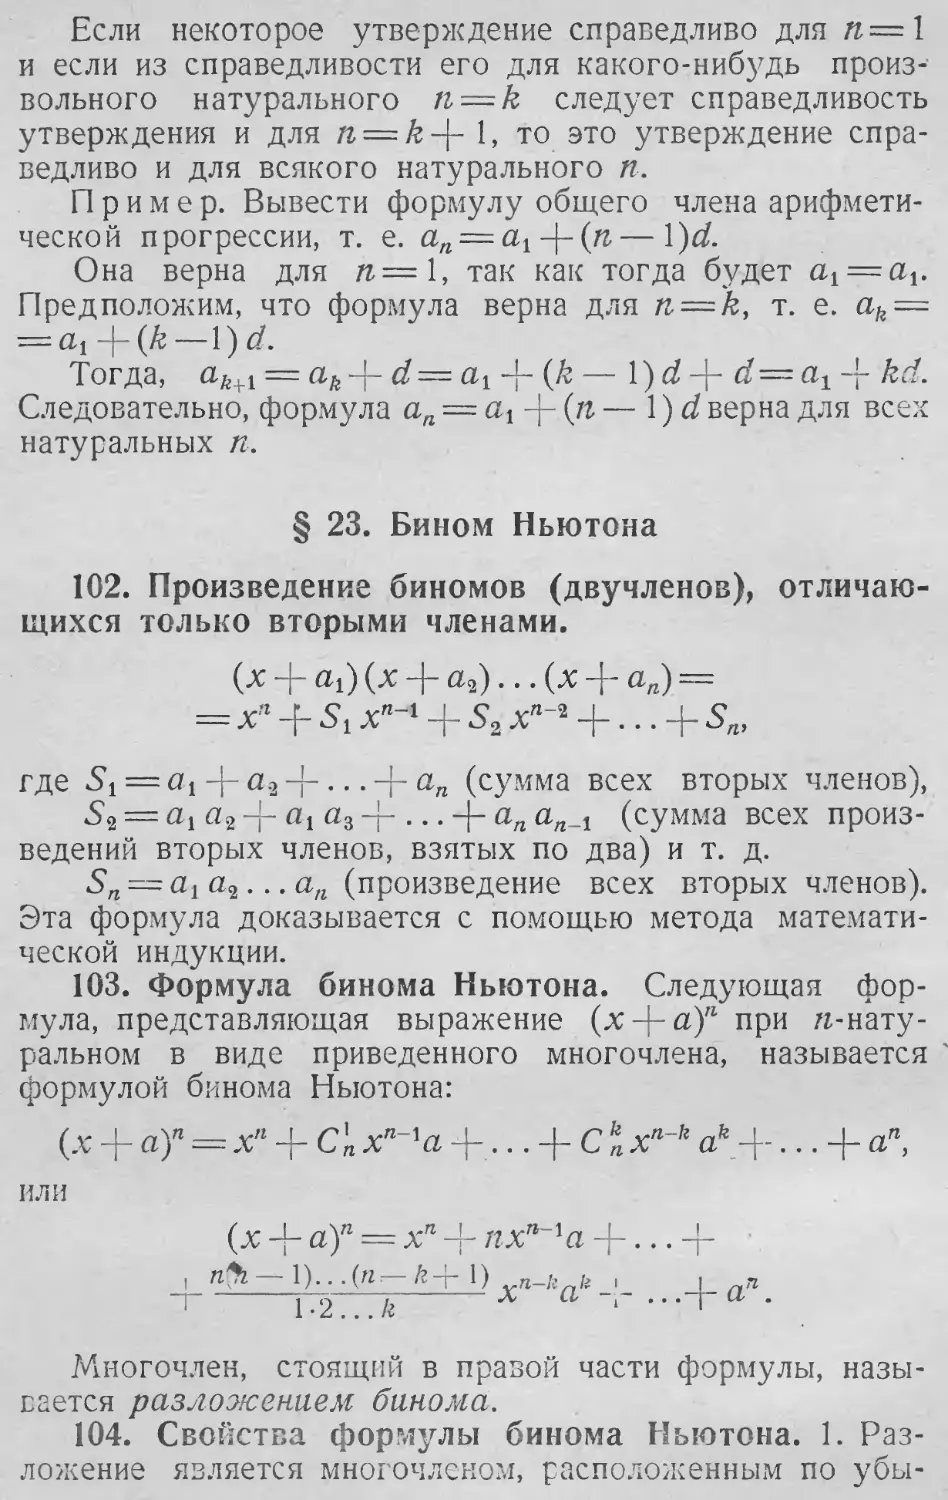 Б
*
§ 23. Бином Ньютона
103. Формула бинома Ньютона
104. Свойства формулы бинома Ньютона